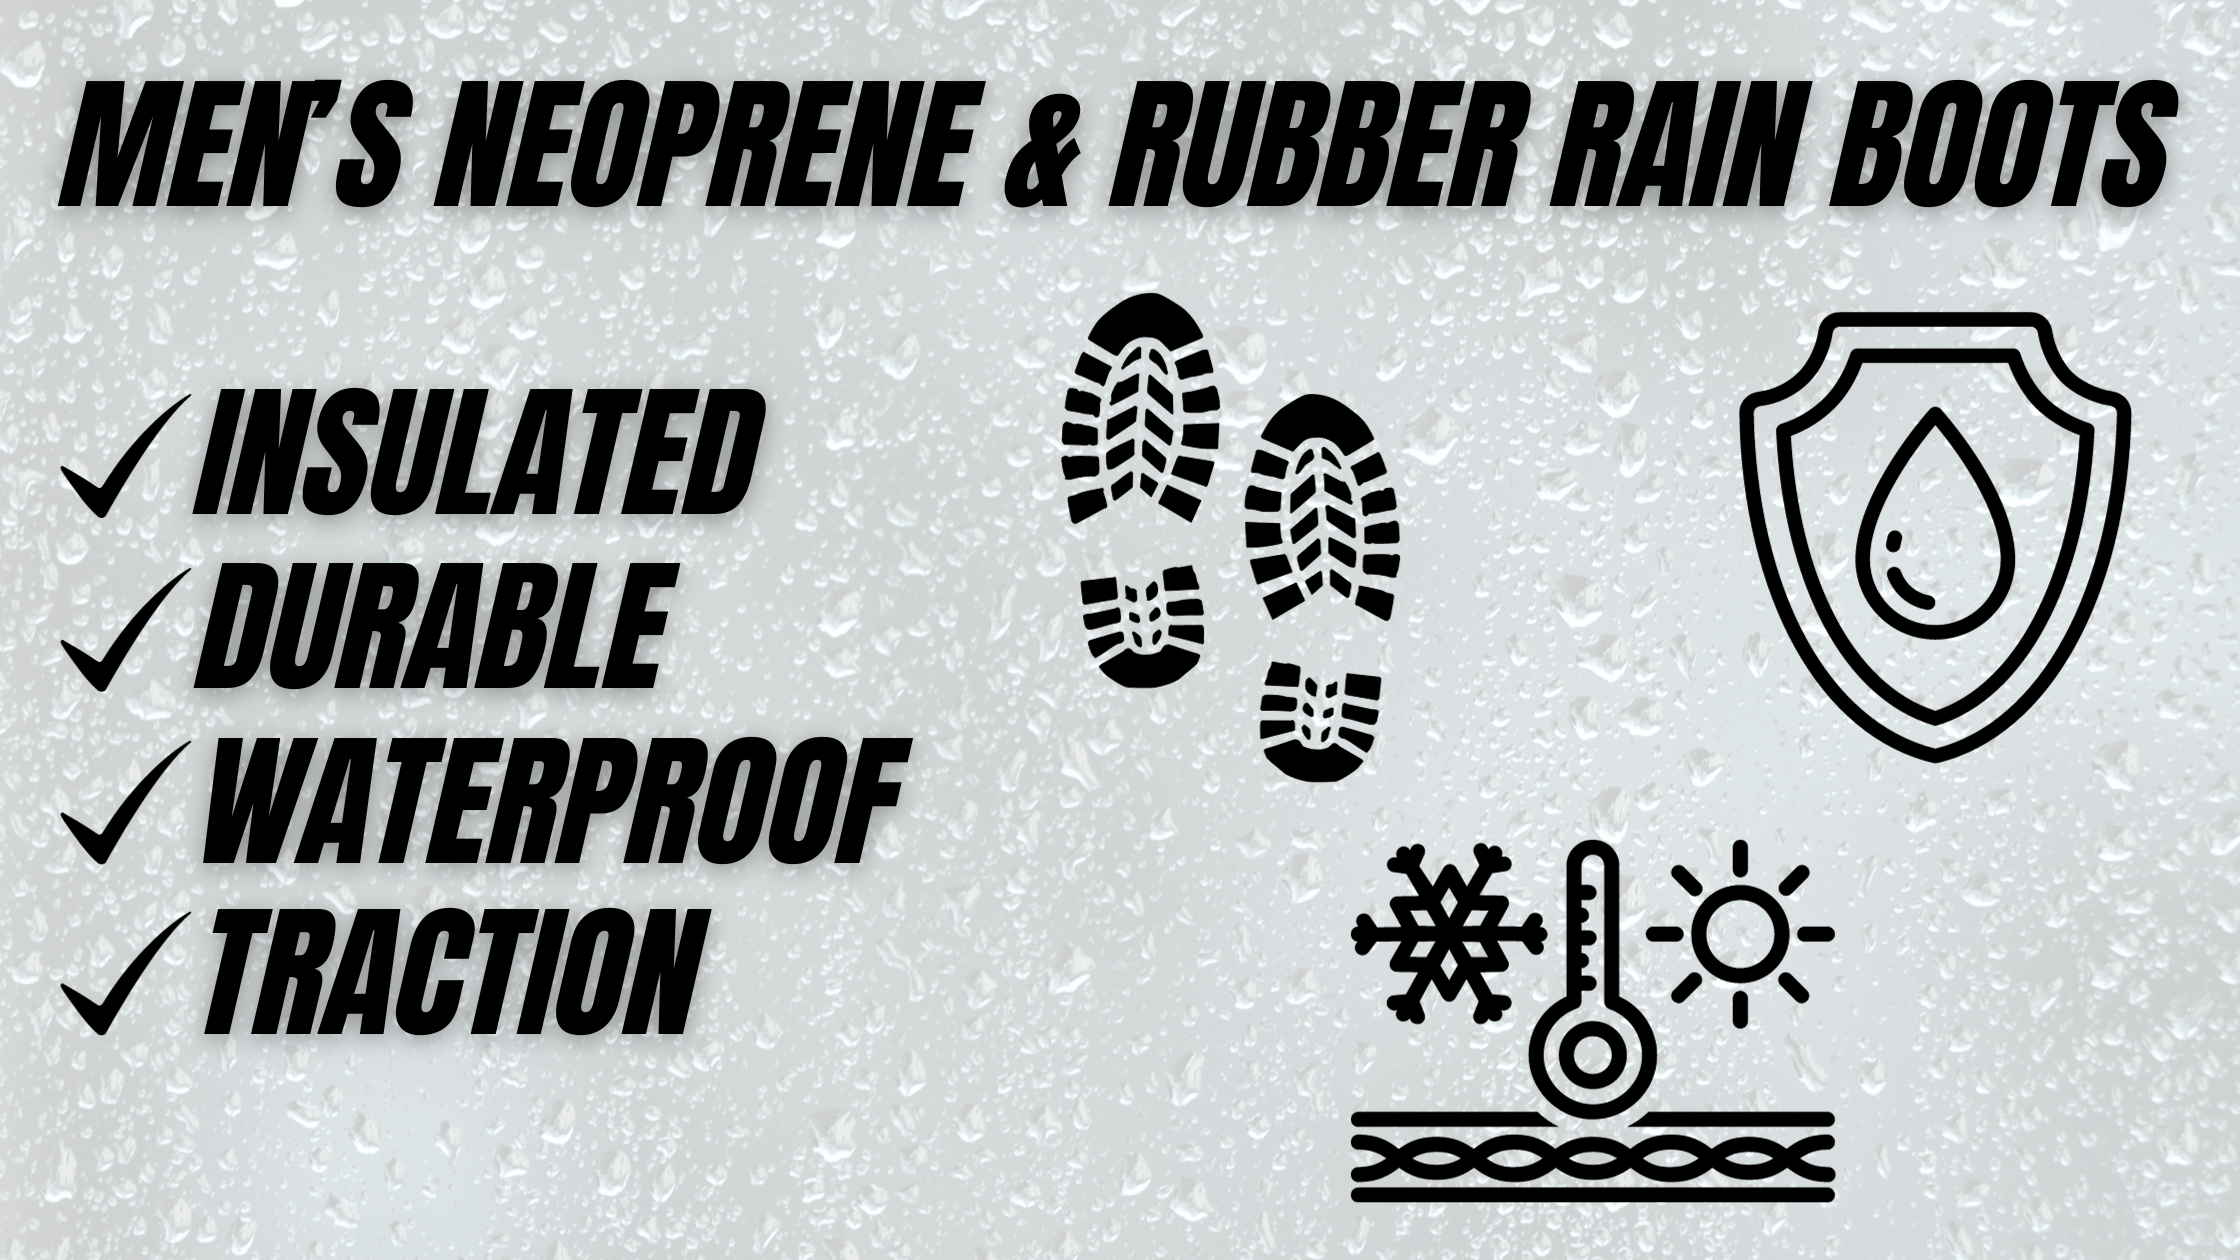 Men's Neoprene & Rubber Rain Boots - Northside USA